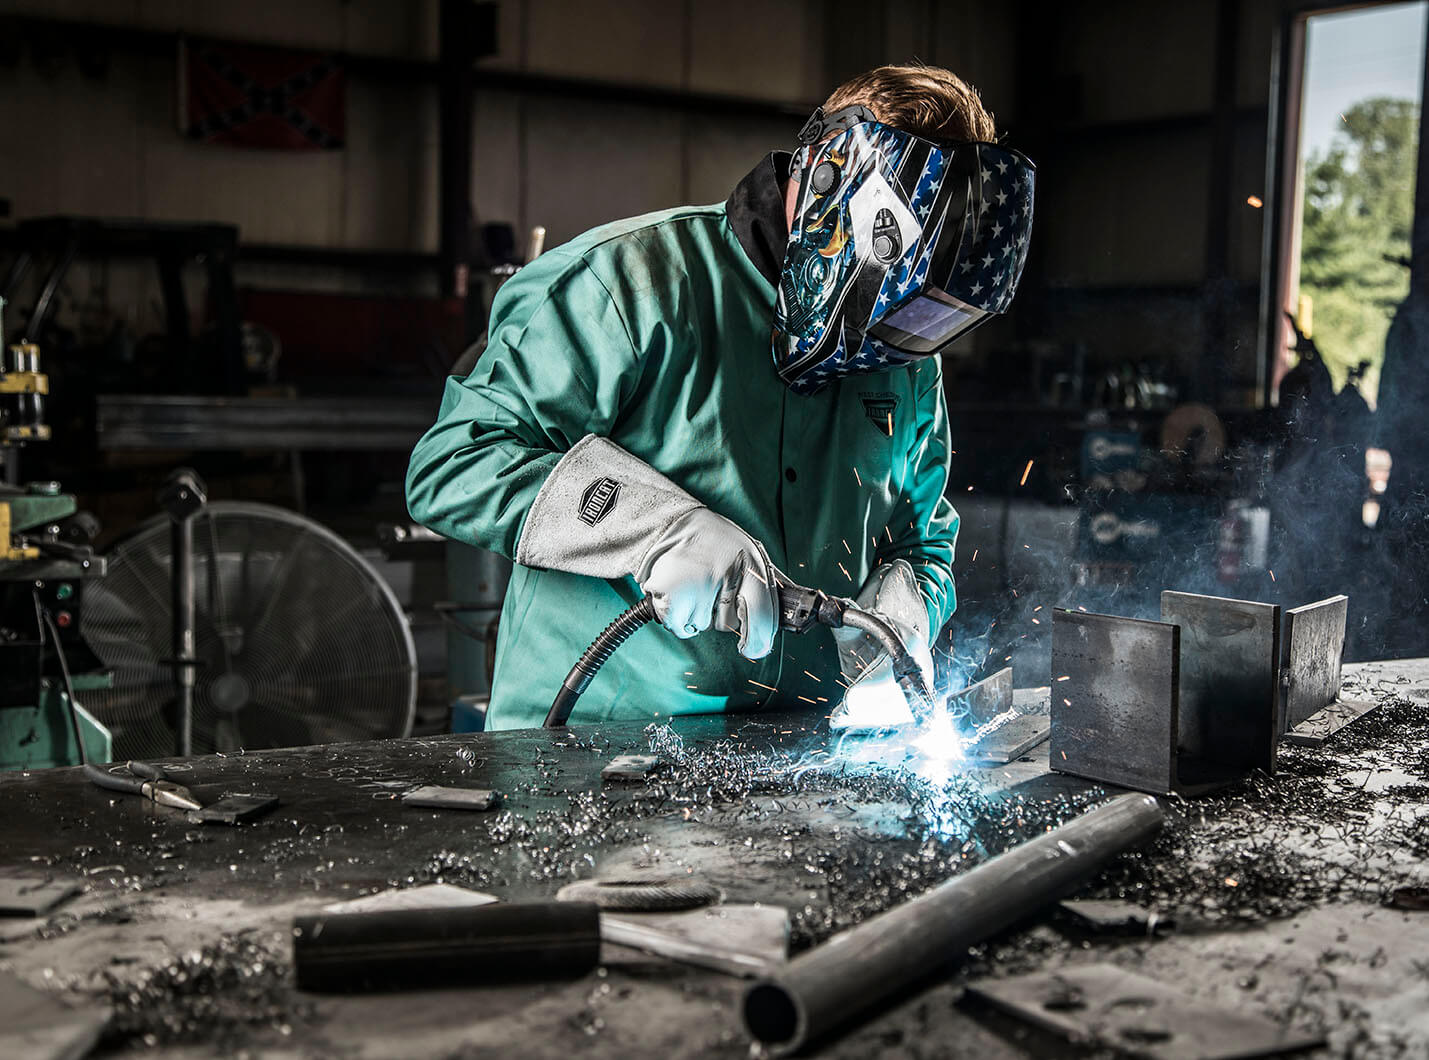 Does welding shorten your life?